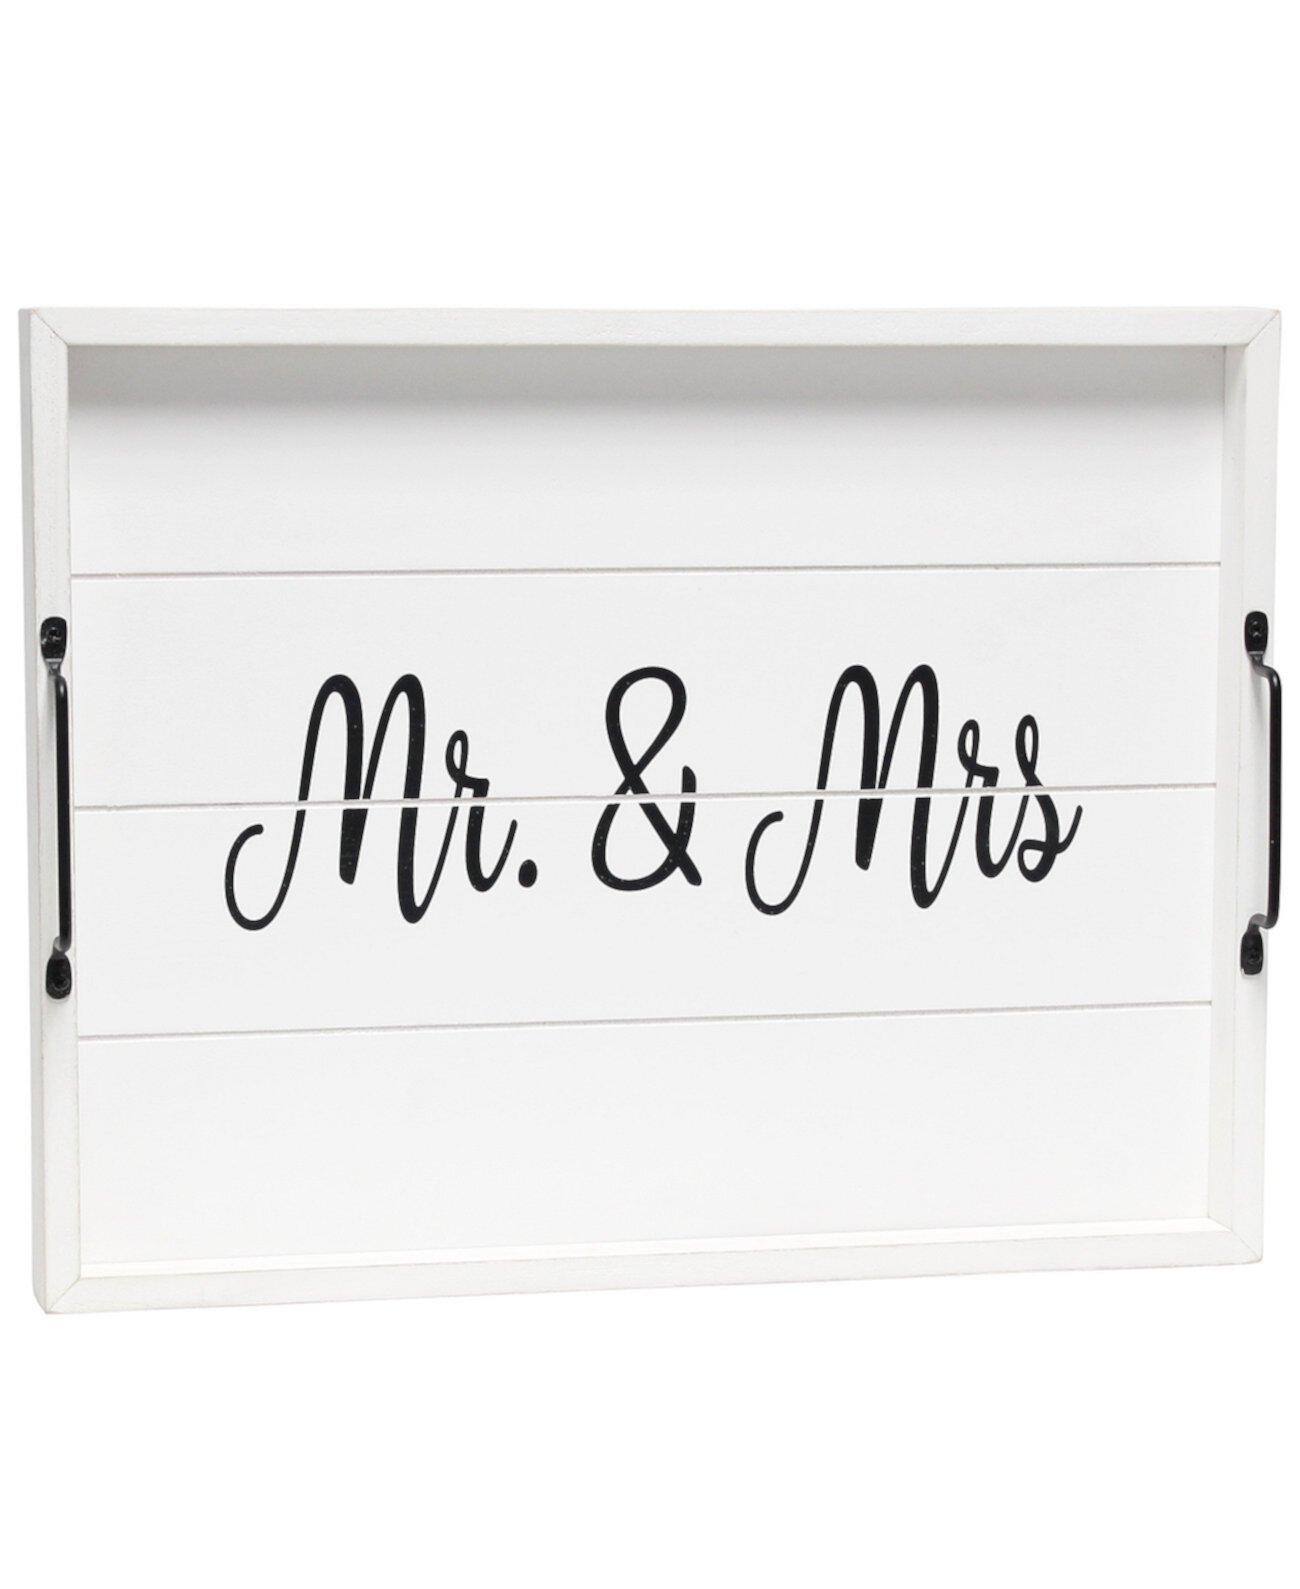 Декоративный поднос сервировочный из дерева с ручками - Mr and Mrs Elegant Designs